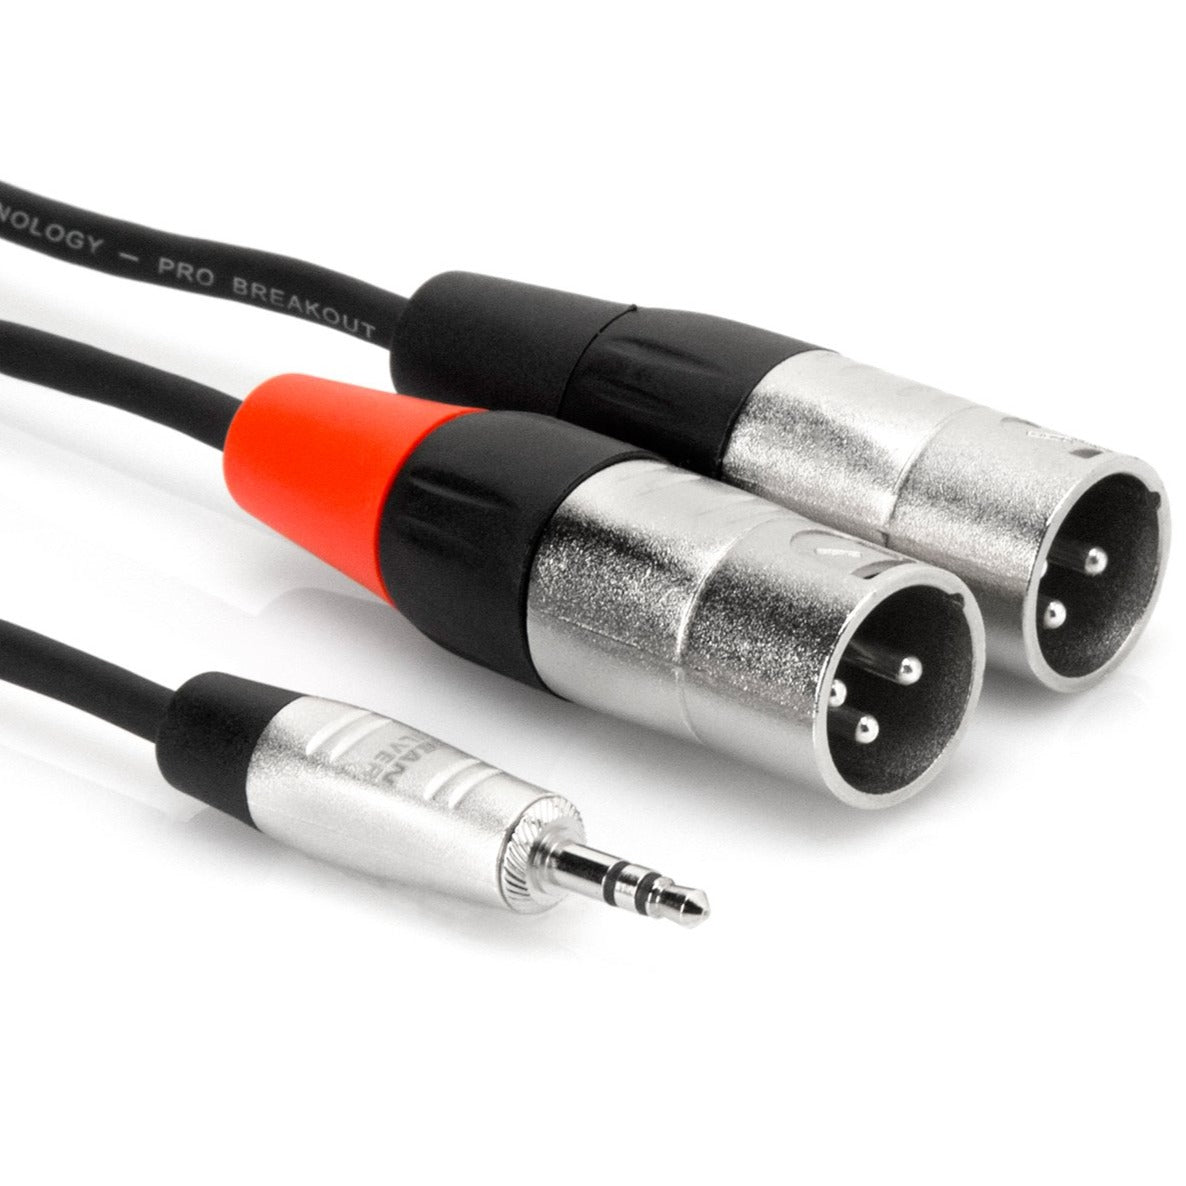 MAGNUS Jack 3,5 - Câble de signal audio stéréo Jack 3,5 mm pour